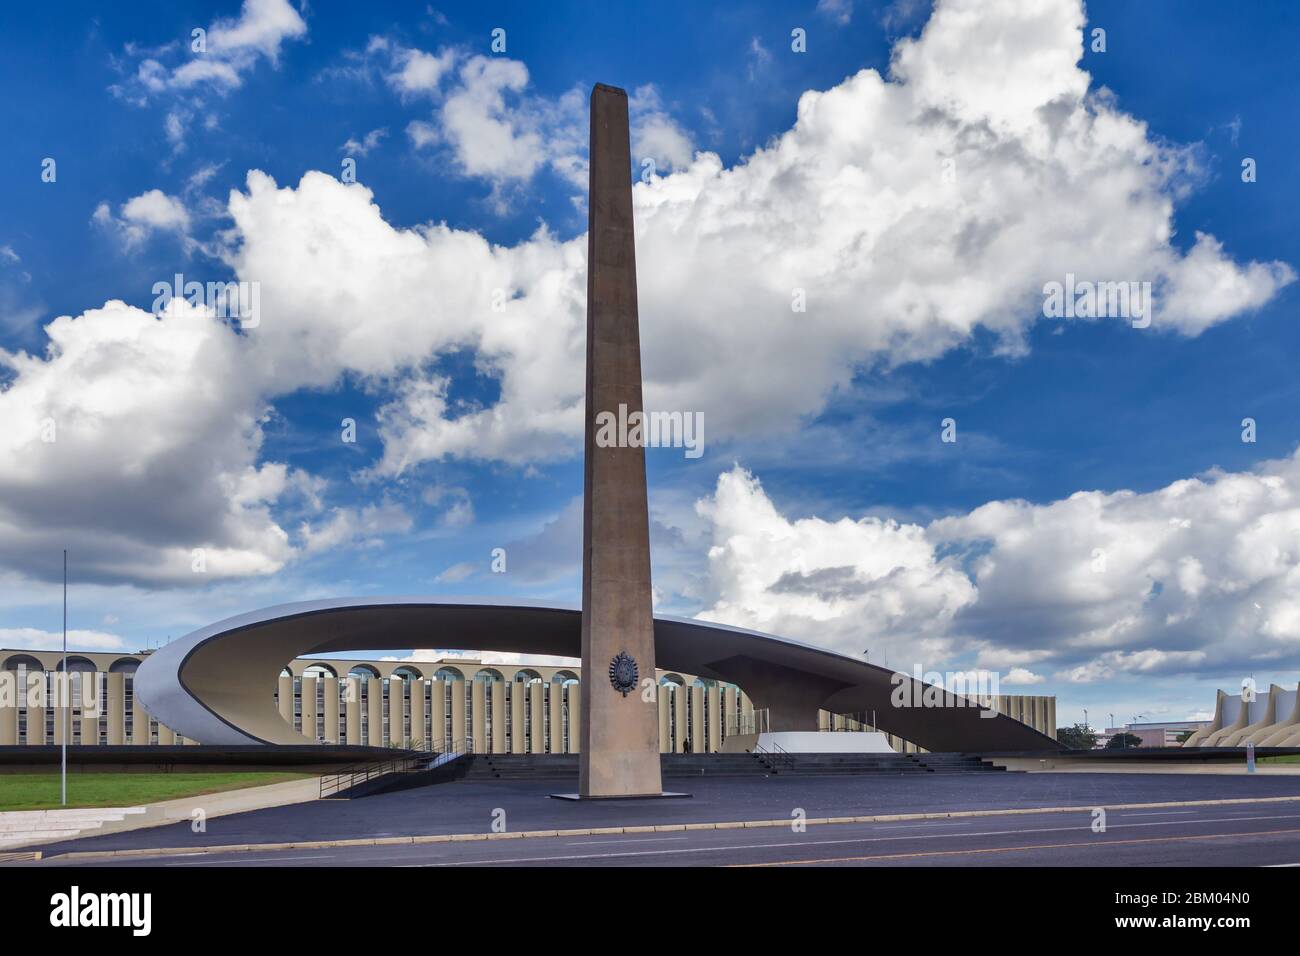 Quartier général militaire brésilien de la Défense nationale, Oscar Niemeyer, Brasilia, Brésil Banque D'Images